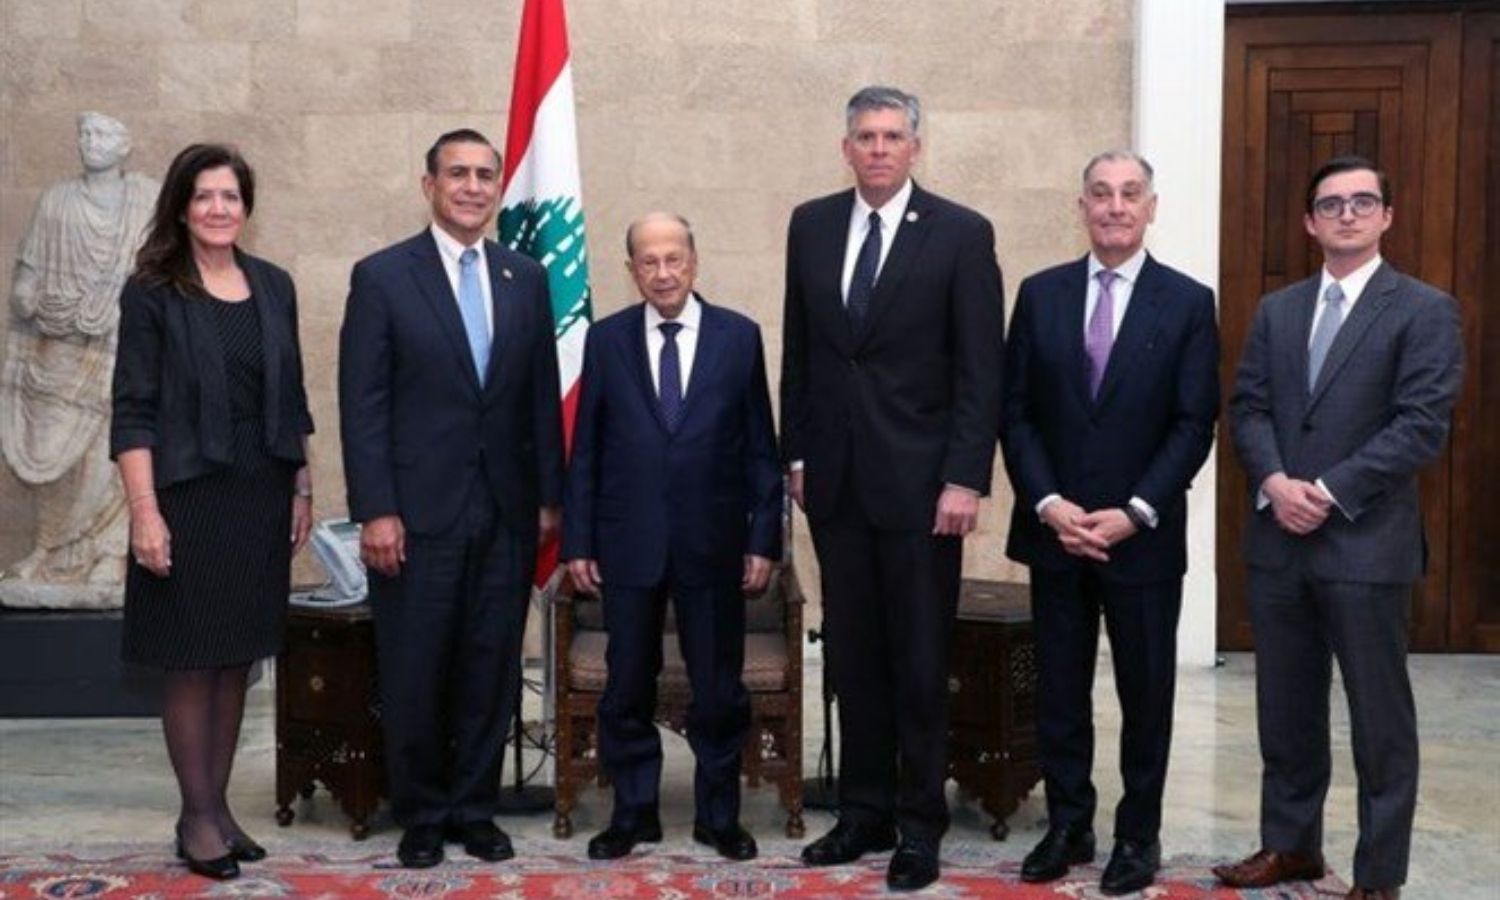 وفد من الكونغرس الأمريكي مع الرئيس اللبناني، ميشيل عون، والسفيرة الأميركية في لبنان، دوروثي شيا، "نداء بوست"، 2021.